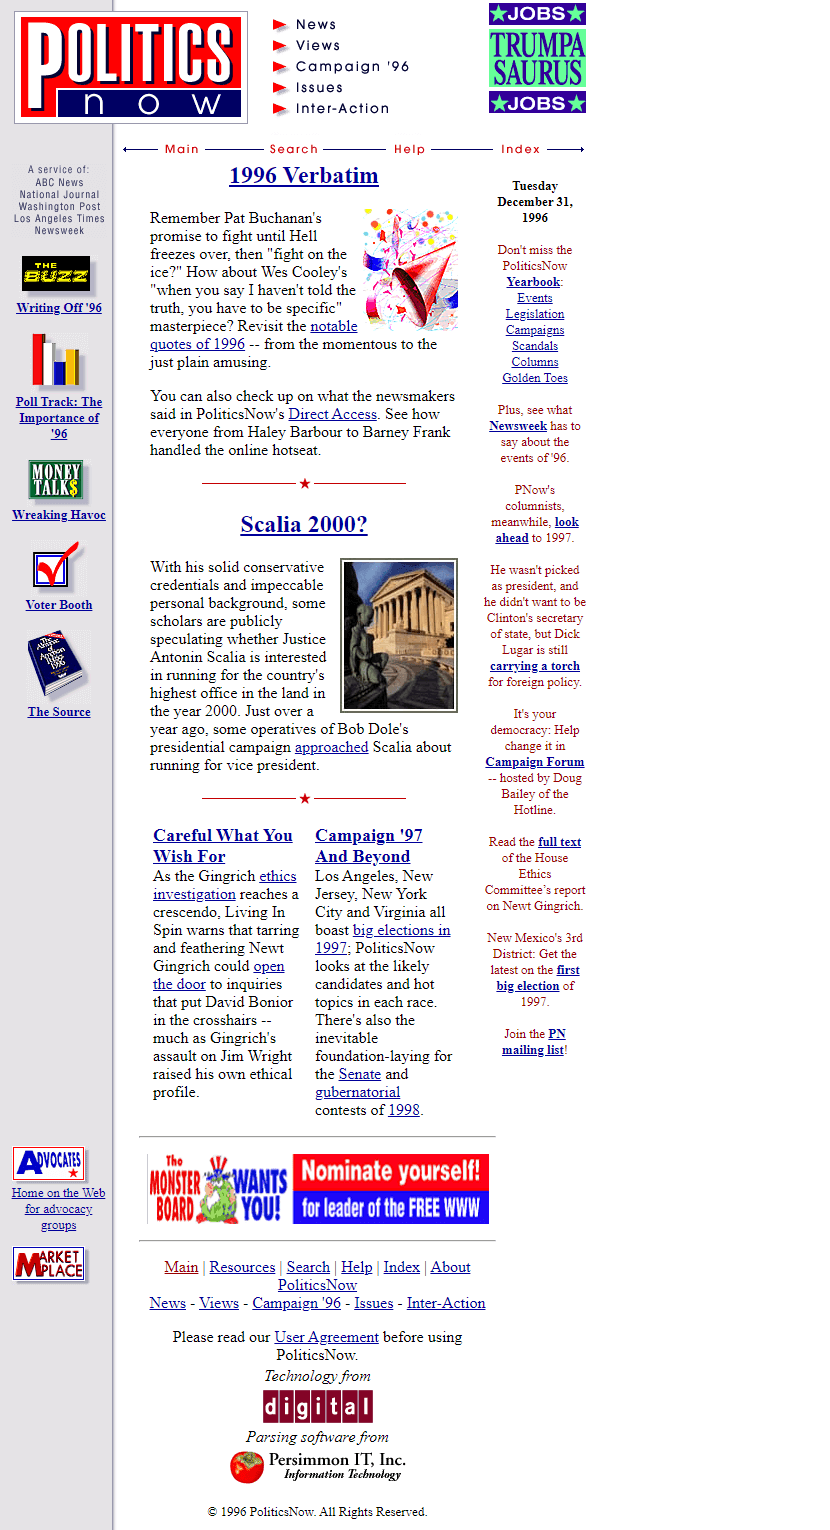 PoliticsNow website in 1996